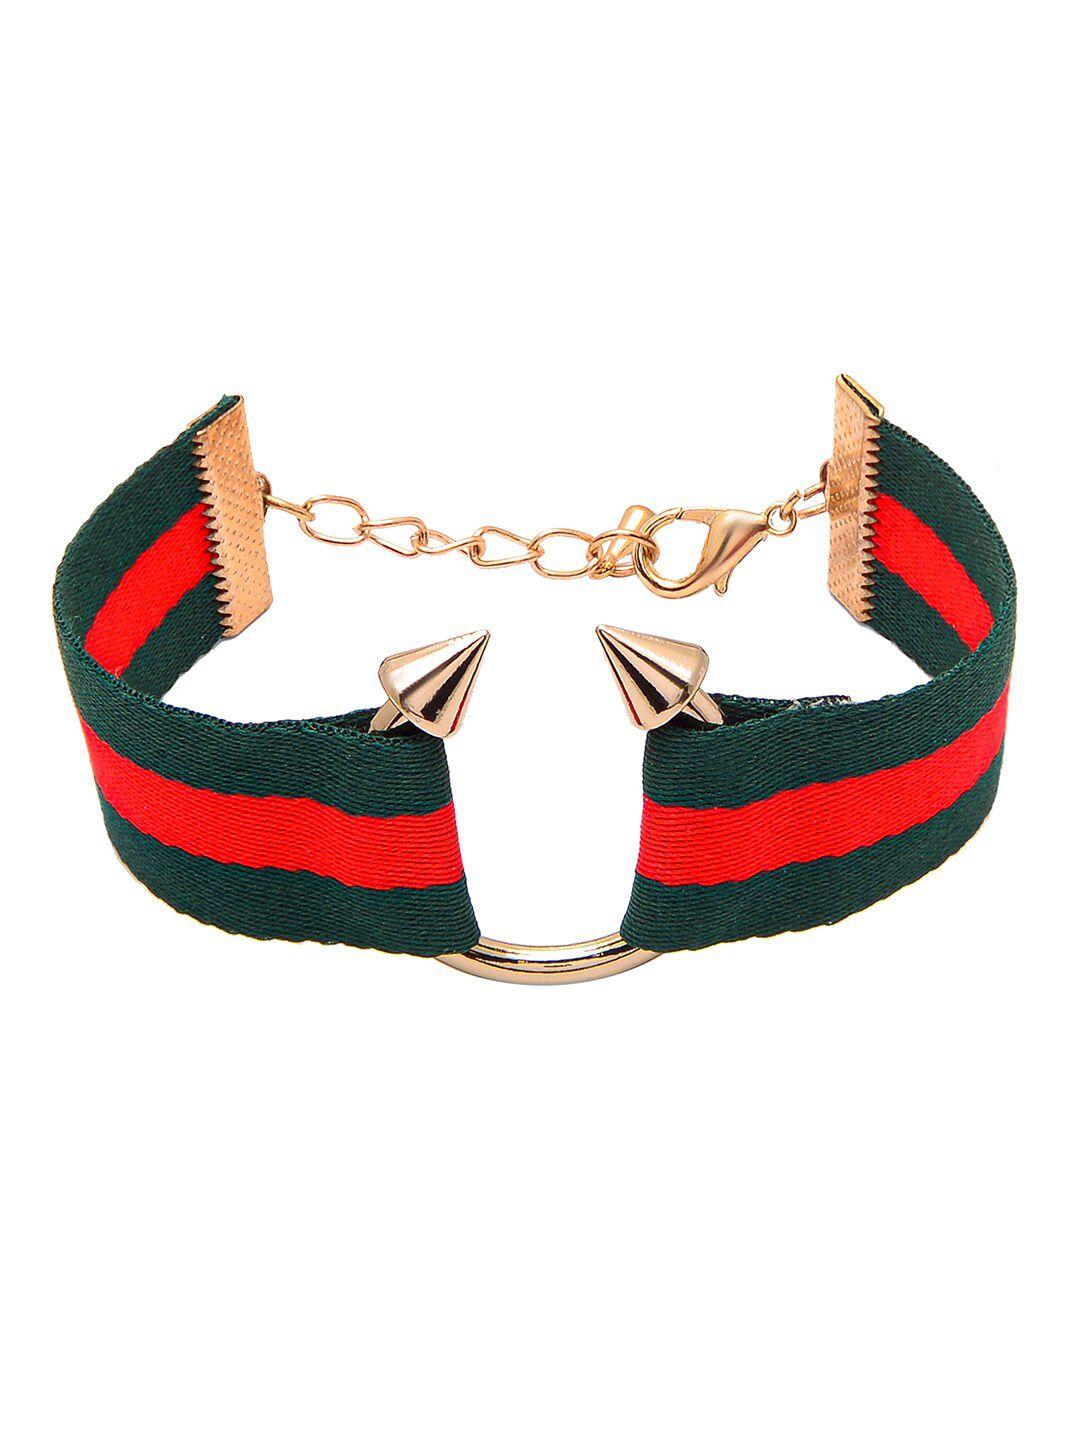 shining jewel - by shivansh women green & red link bracelet